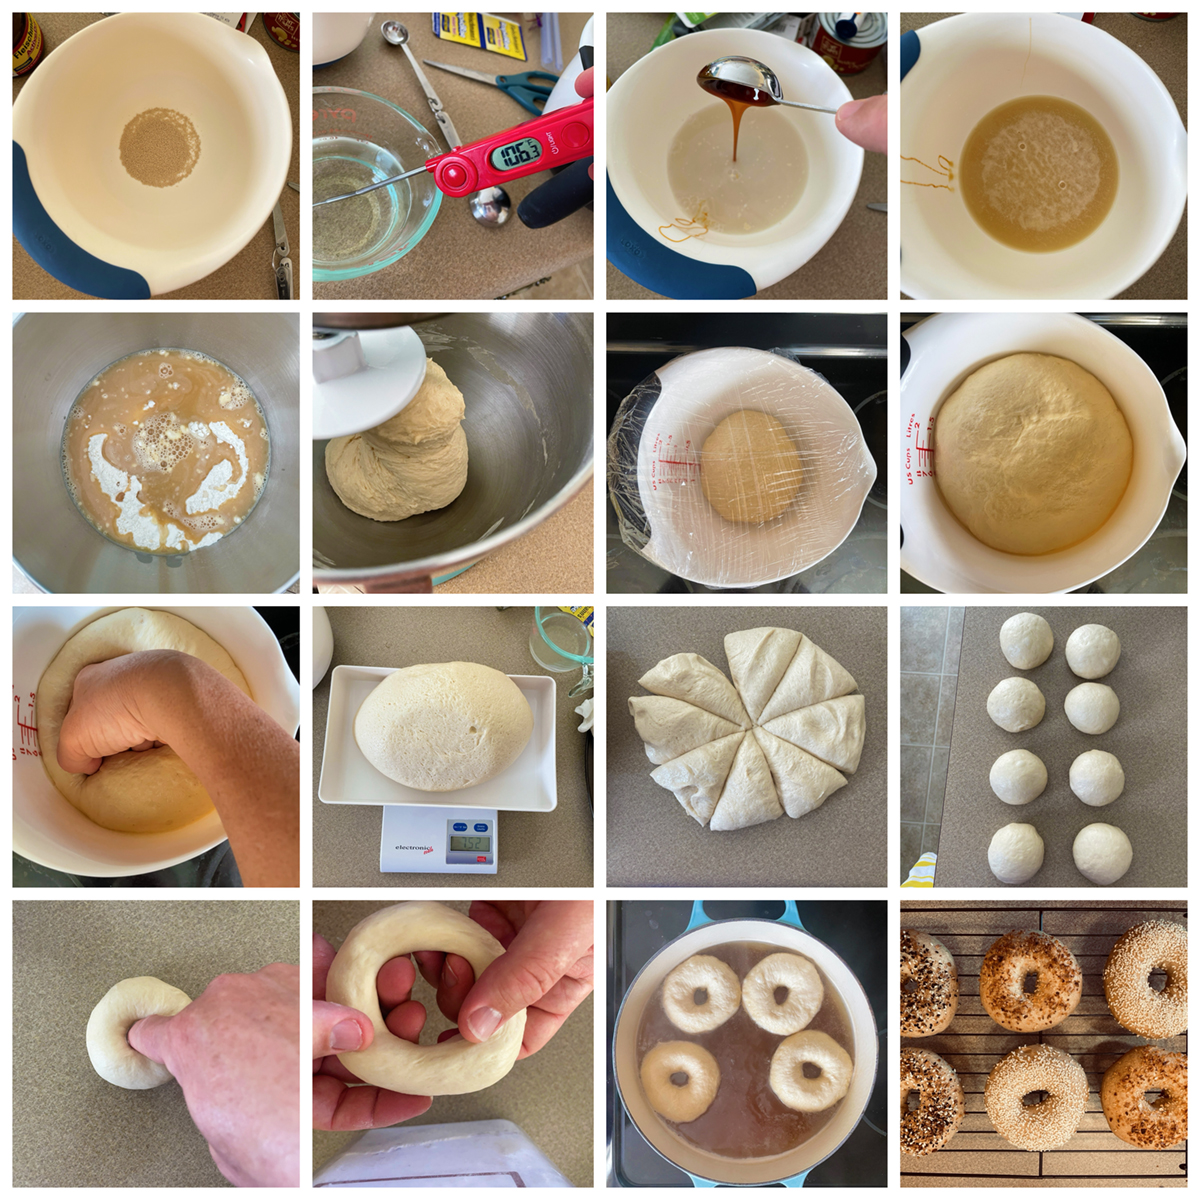 Steps to Make Bagels